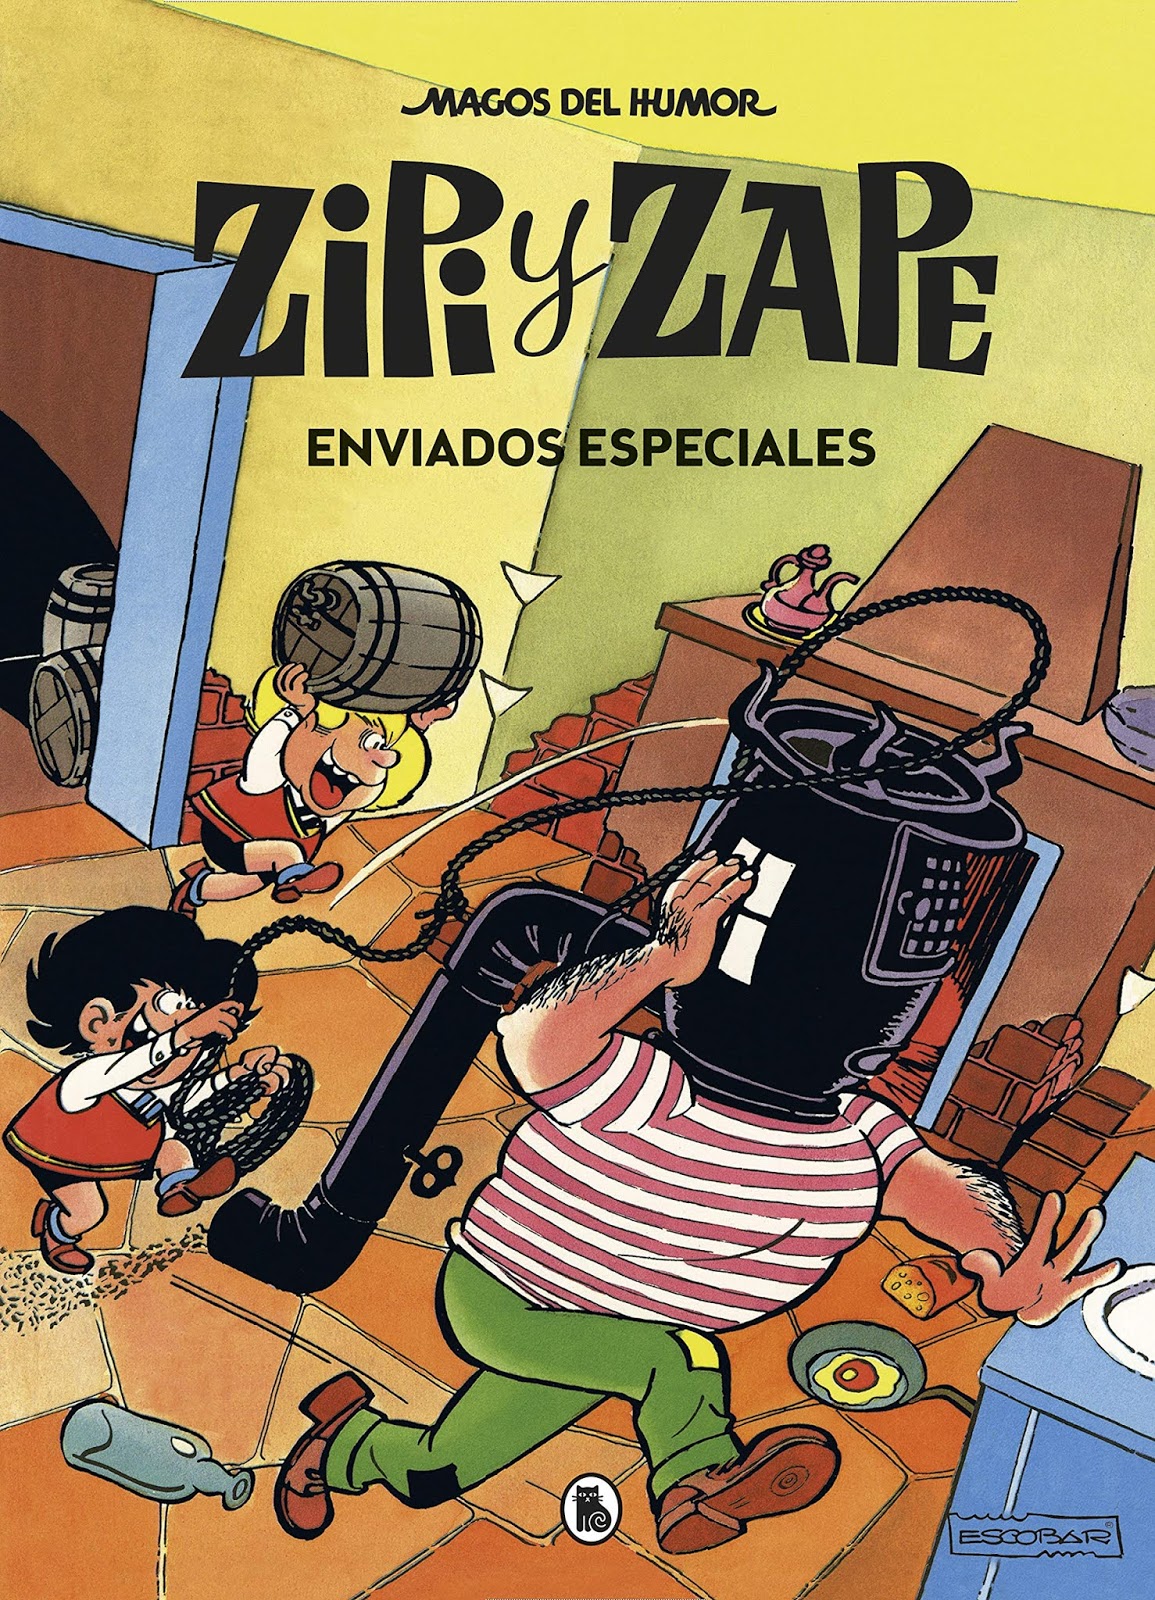 Apuntes sobre la escuela Bruguera: Las "aventuras largas" de Zipi y Zape